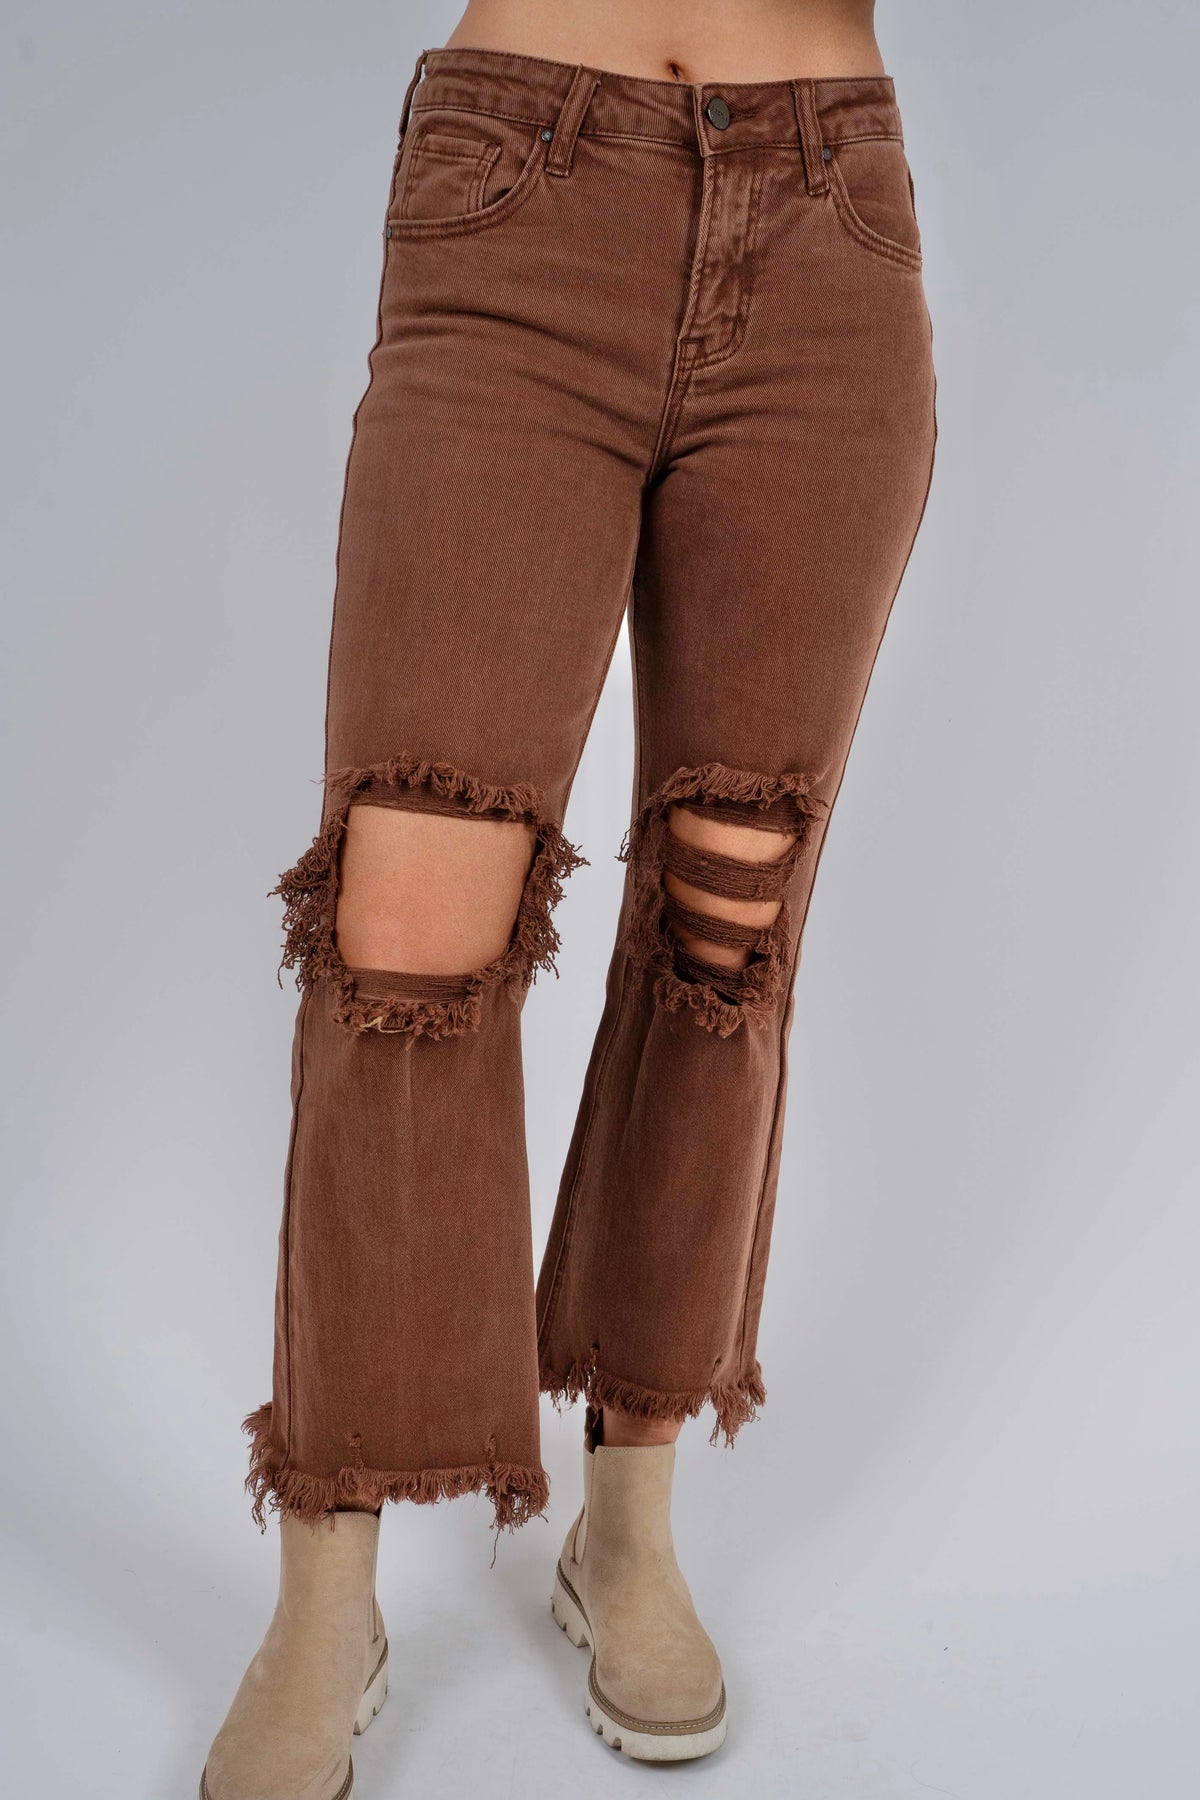 Buy Vintage Brown Gradient Jeans, Wide Leg Straight Pants, Women